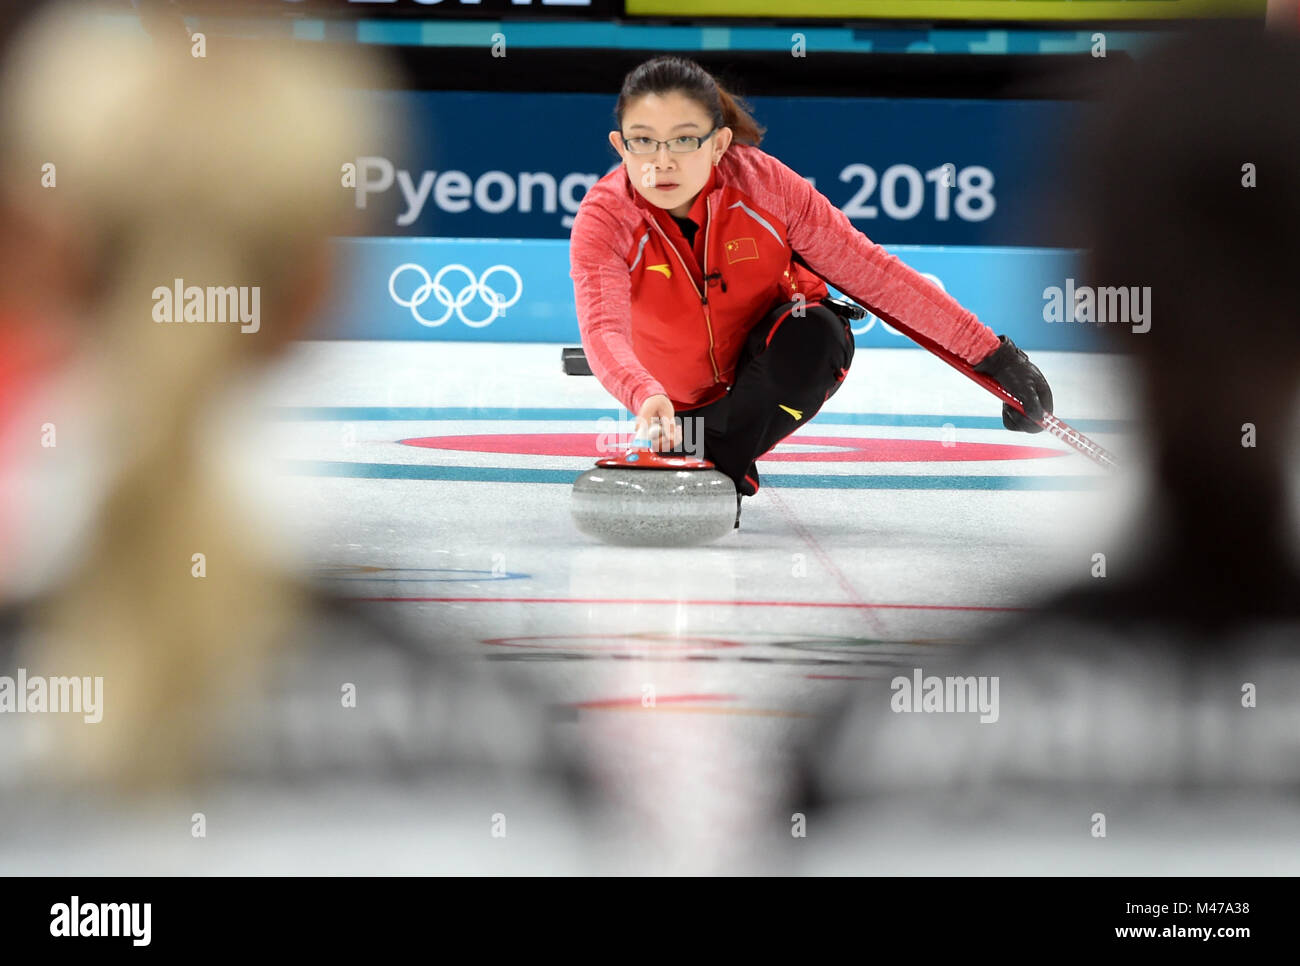 Pyeongchang, Corée du Sud. Feb 15, 2018. Bingyu Wang de la concurrence de la Chine au cours de l'événement de la ronde des femmes contre les athlètes olympiques de curling de la Russie à l'occasion des Jeux Olympiques d'hiver de PyeongChang 2018 au Centre de curling Gangneung, Gangneung, Corée du Sud, le 15 février 2018. La Chine a perdu 6-7. Credit : Ma Ping/Xinhua/Alamy Live News Banque D'Images